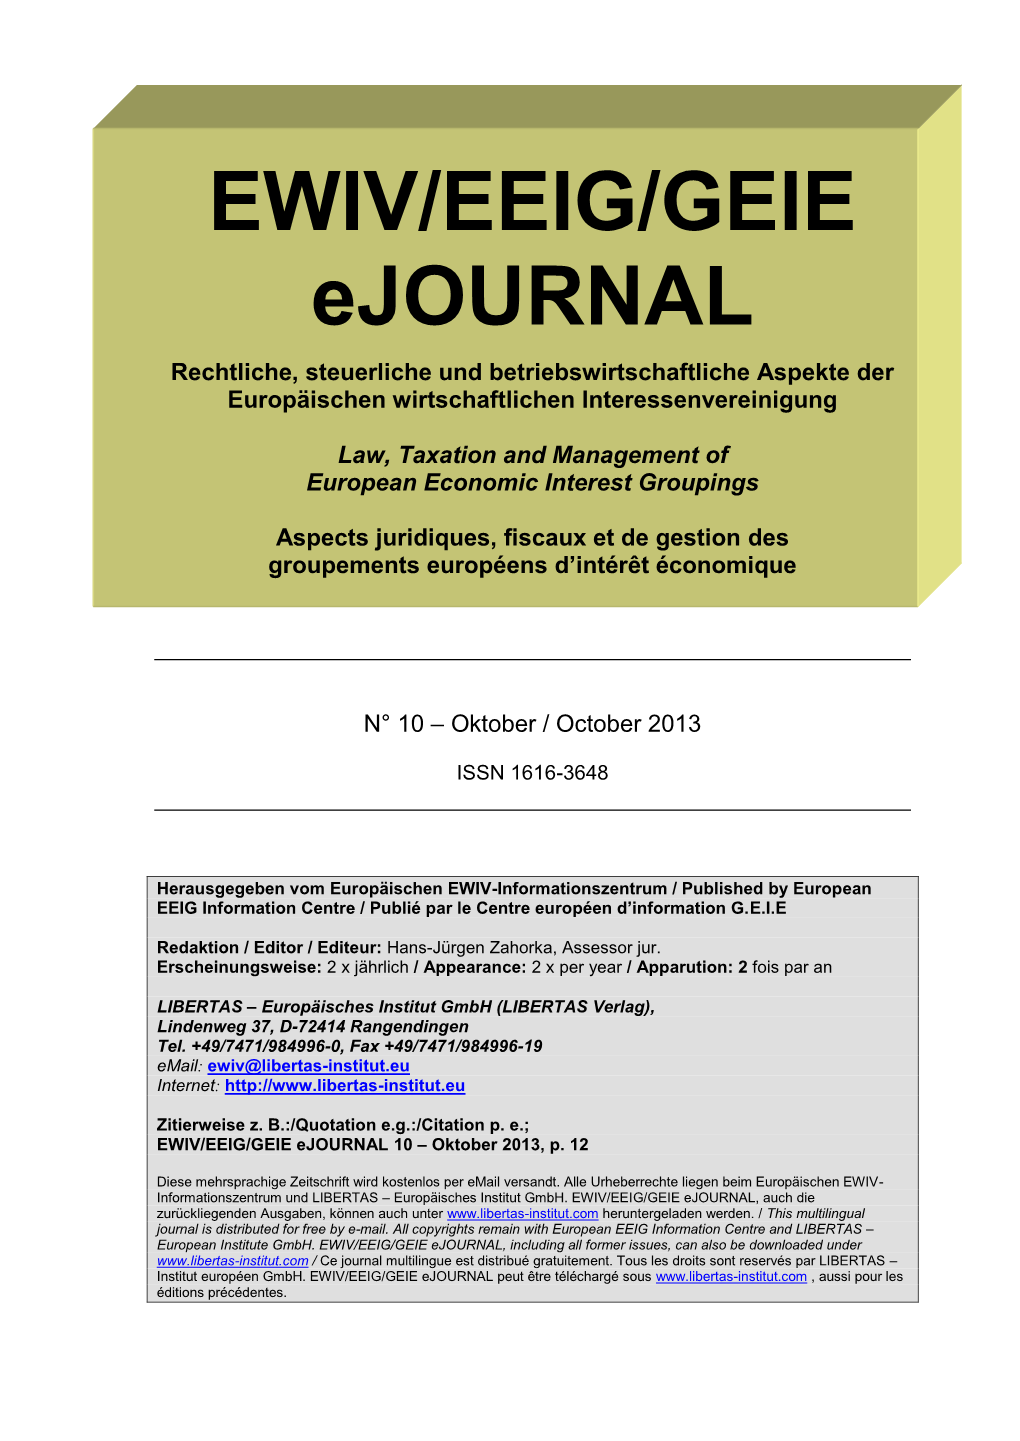 EWIV/EEIG/GEIE Ejournal 10 – Oktober 2013, P